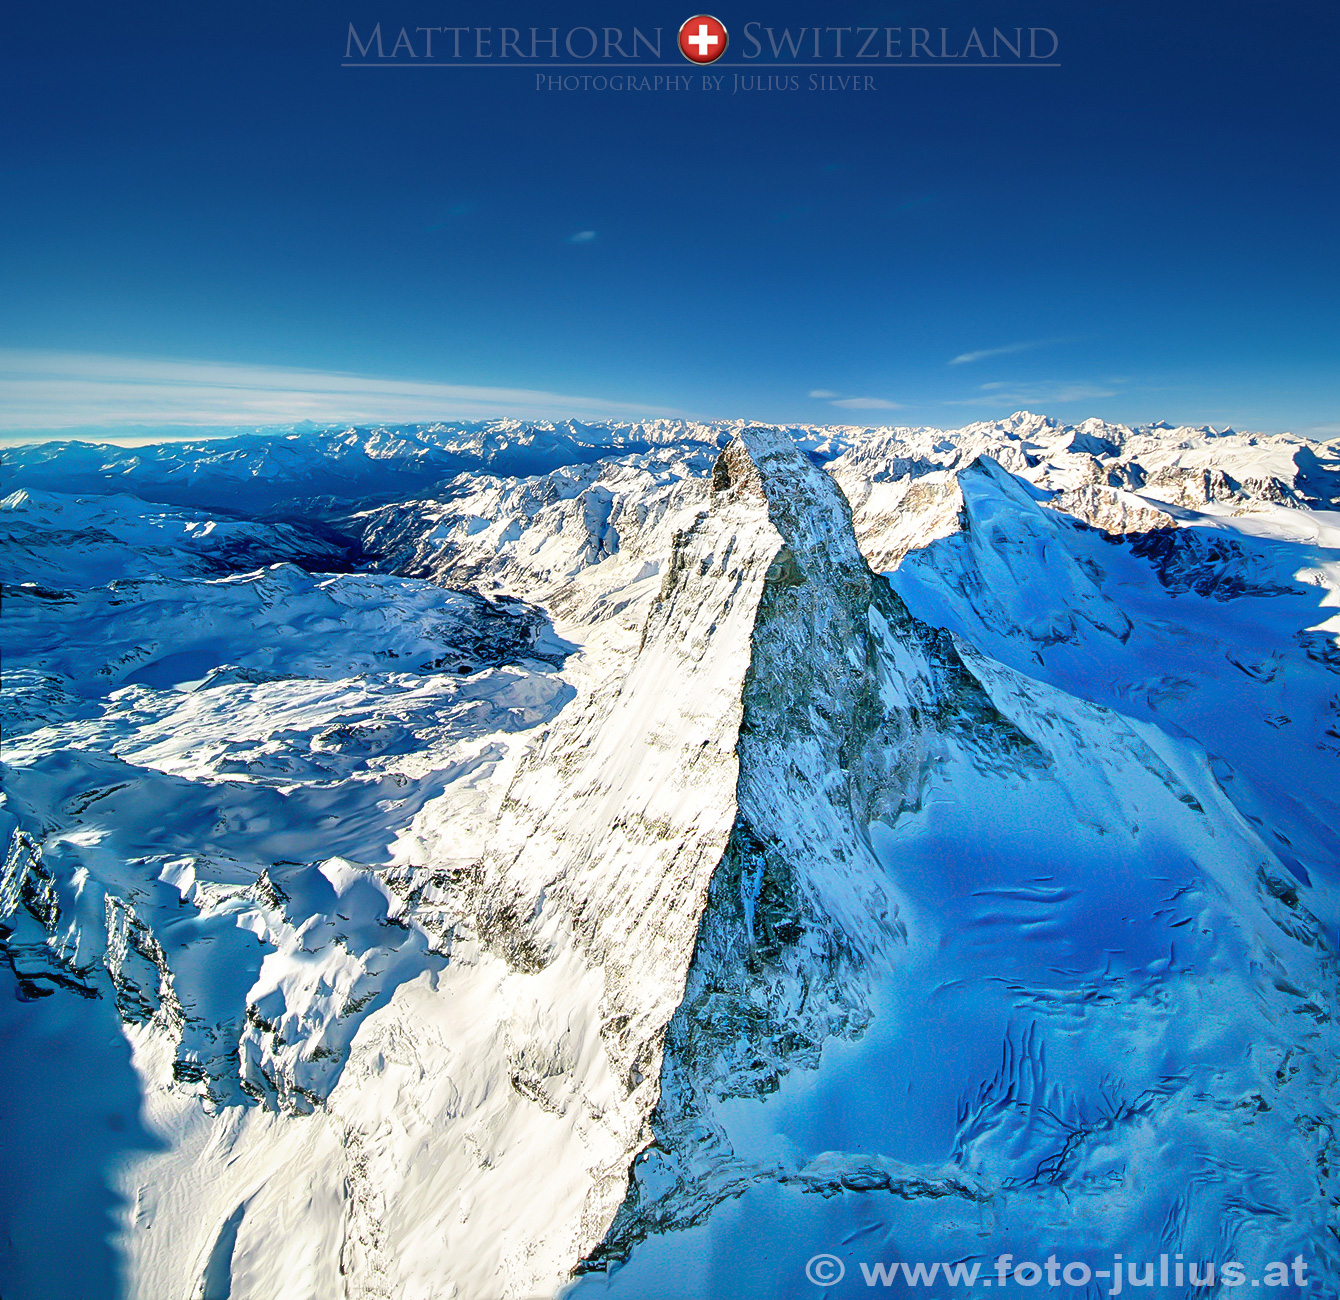 0600a_Matterhorn_Aerial_Photo.jpg, 1,0MB